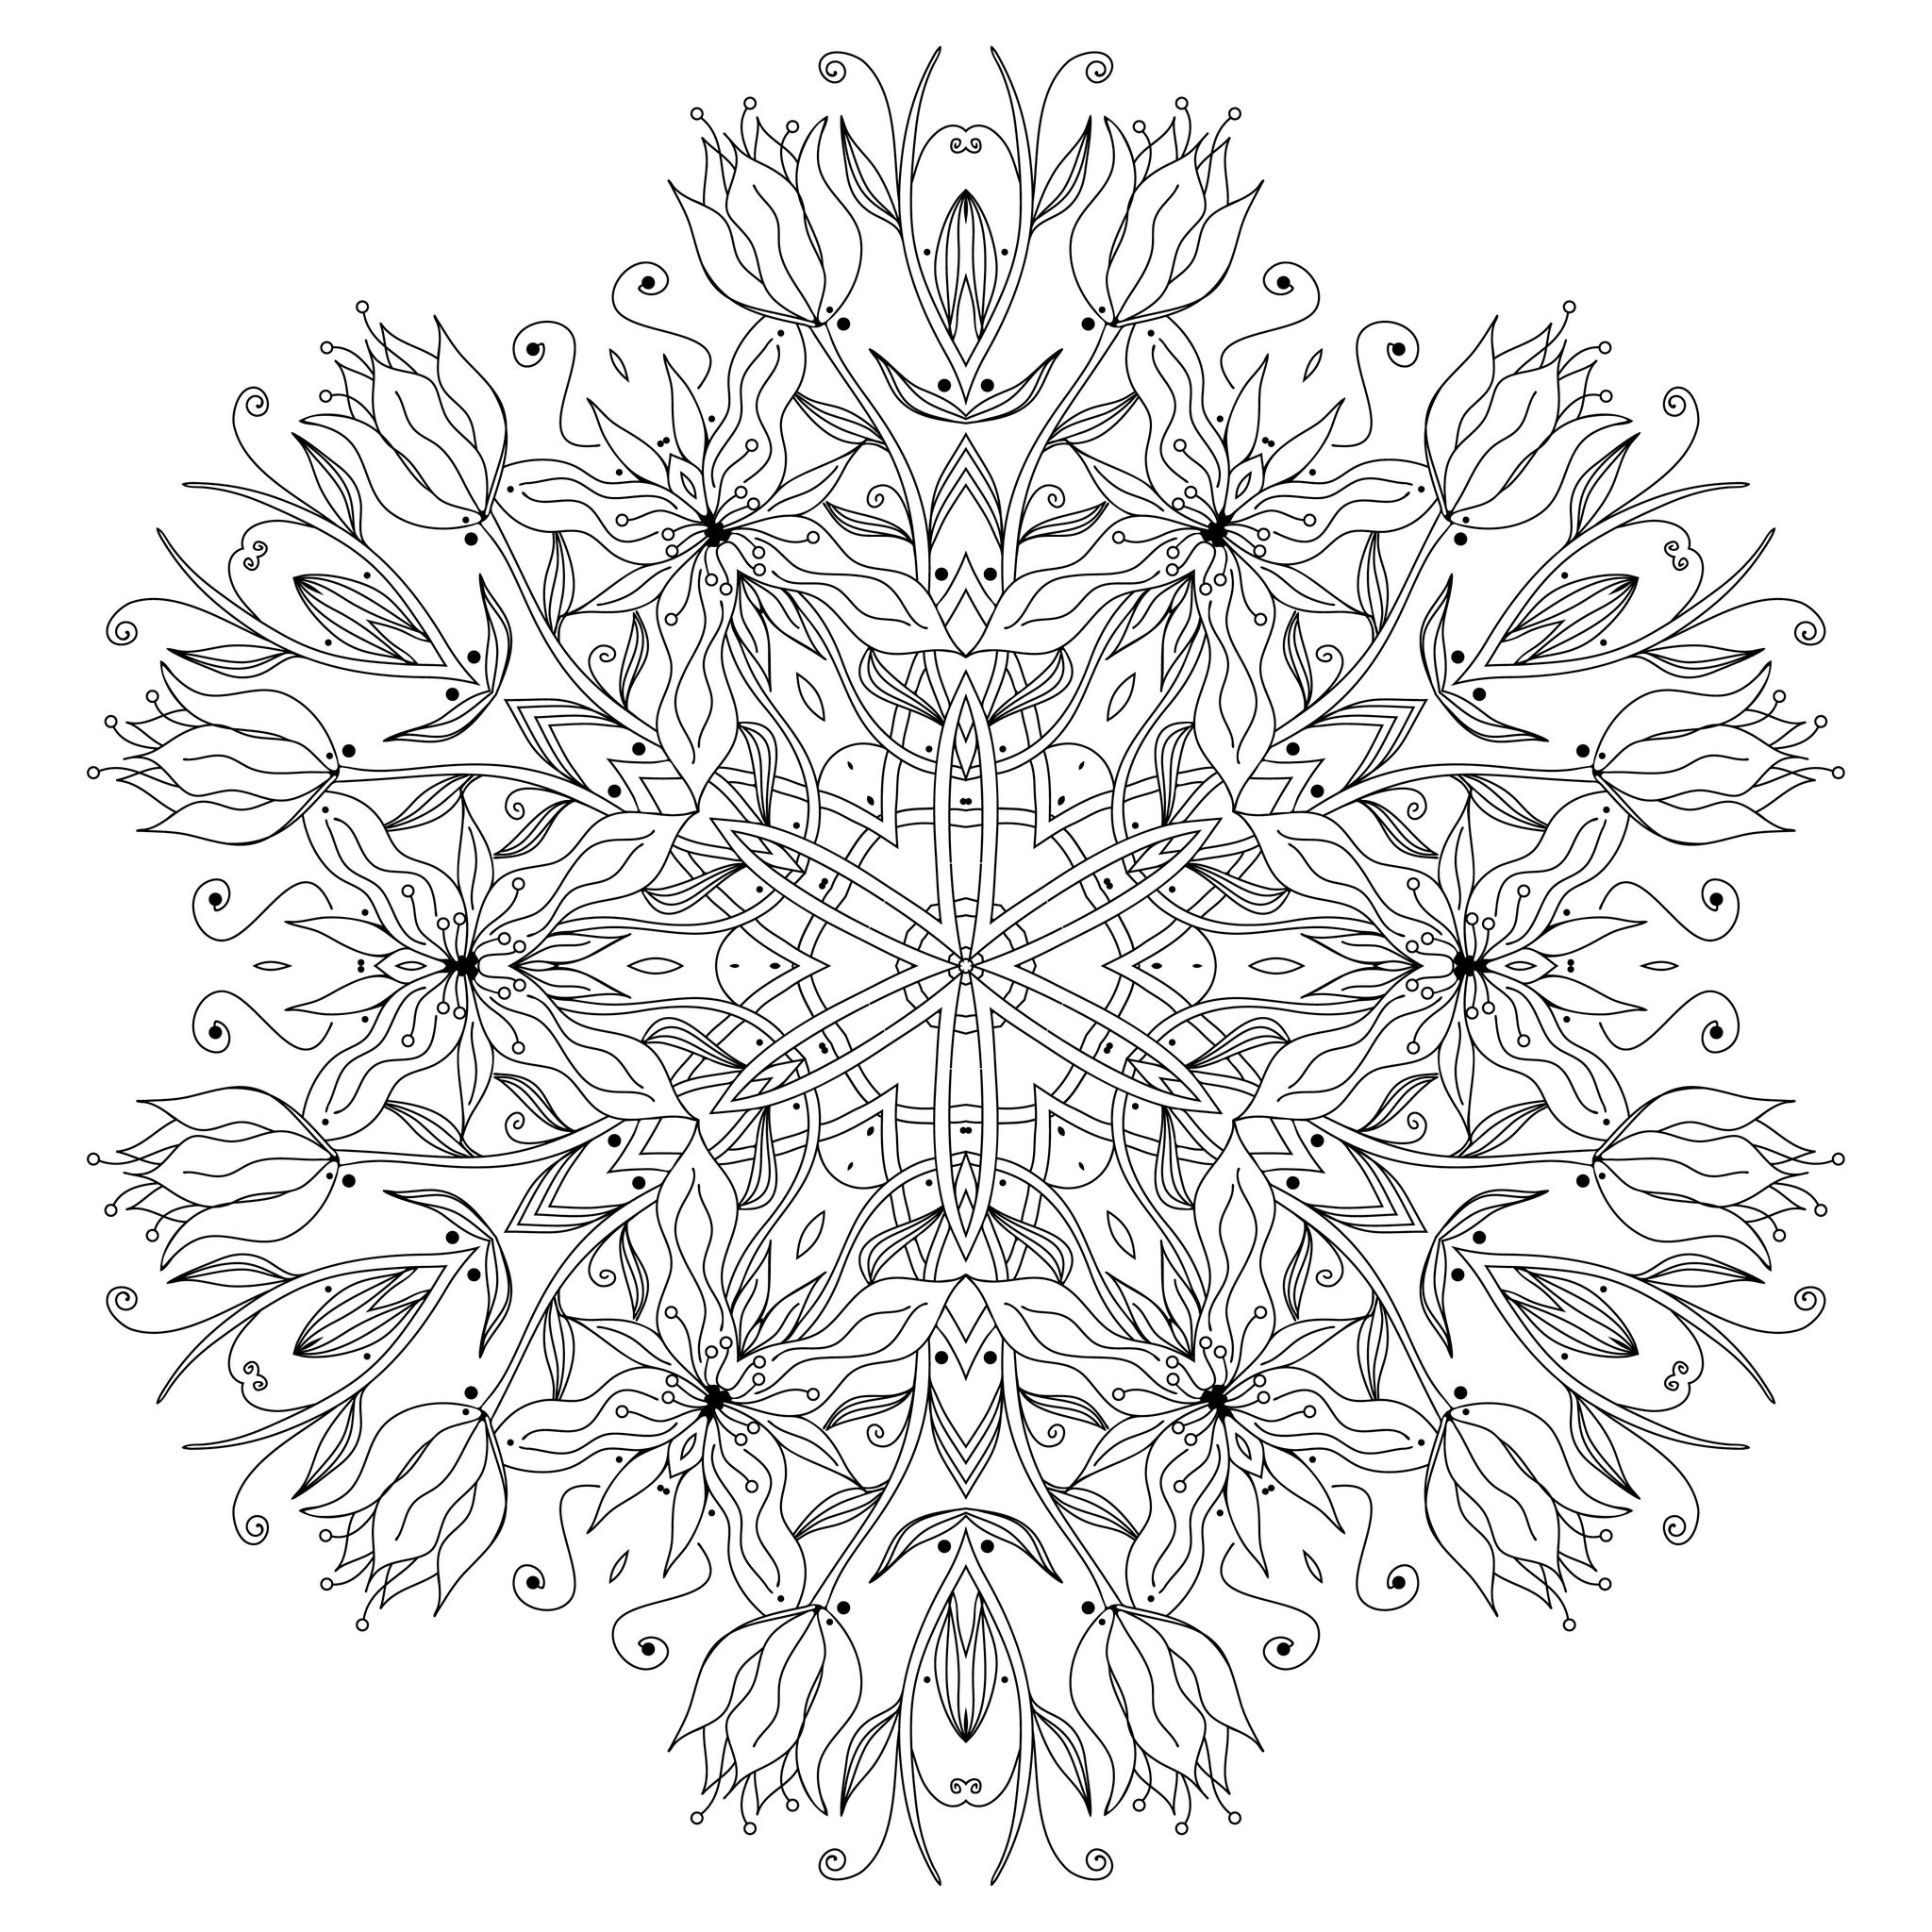 Préparez vos feutres et crayons pour réaliser la mise en couleur de ce Mandala fleuri et original plein de petits détails et zones intriquées.